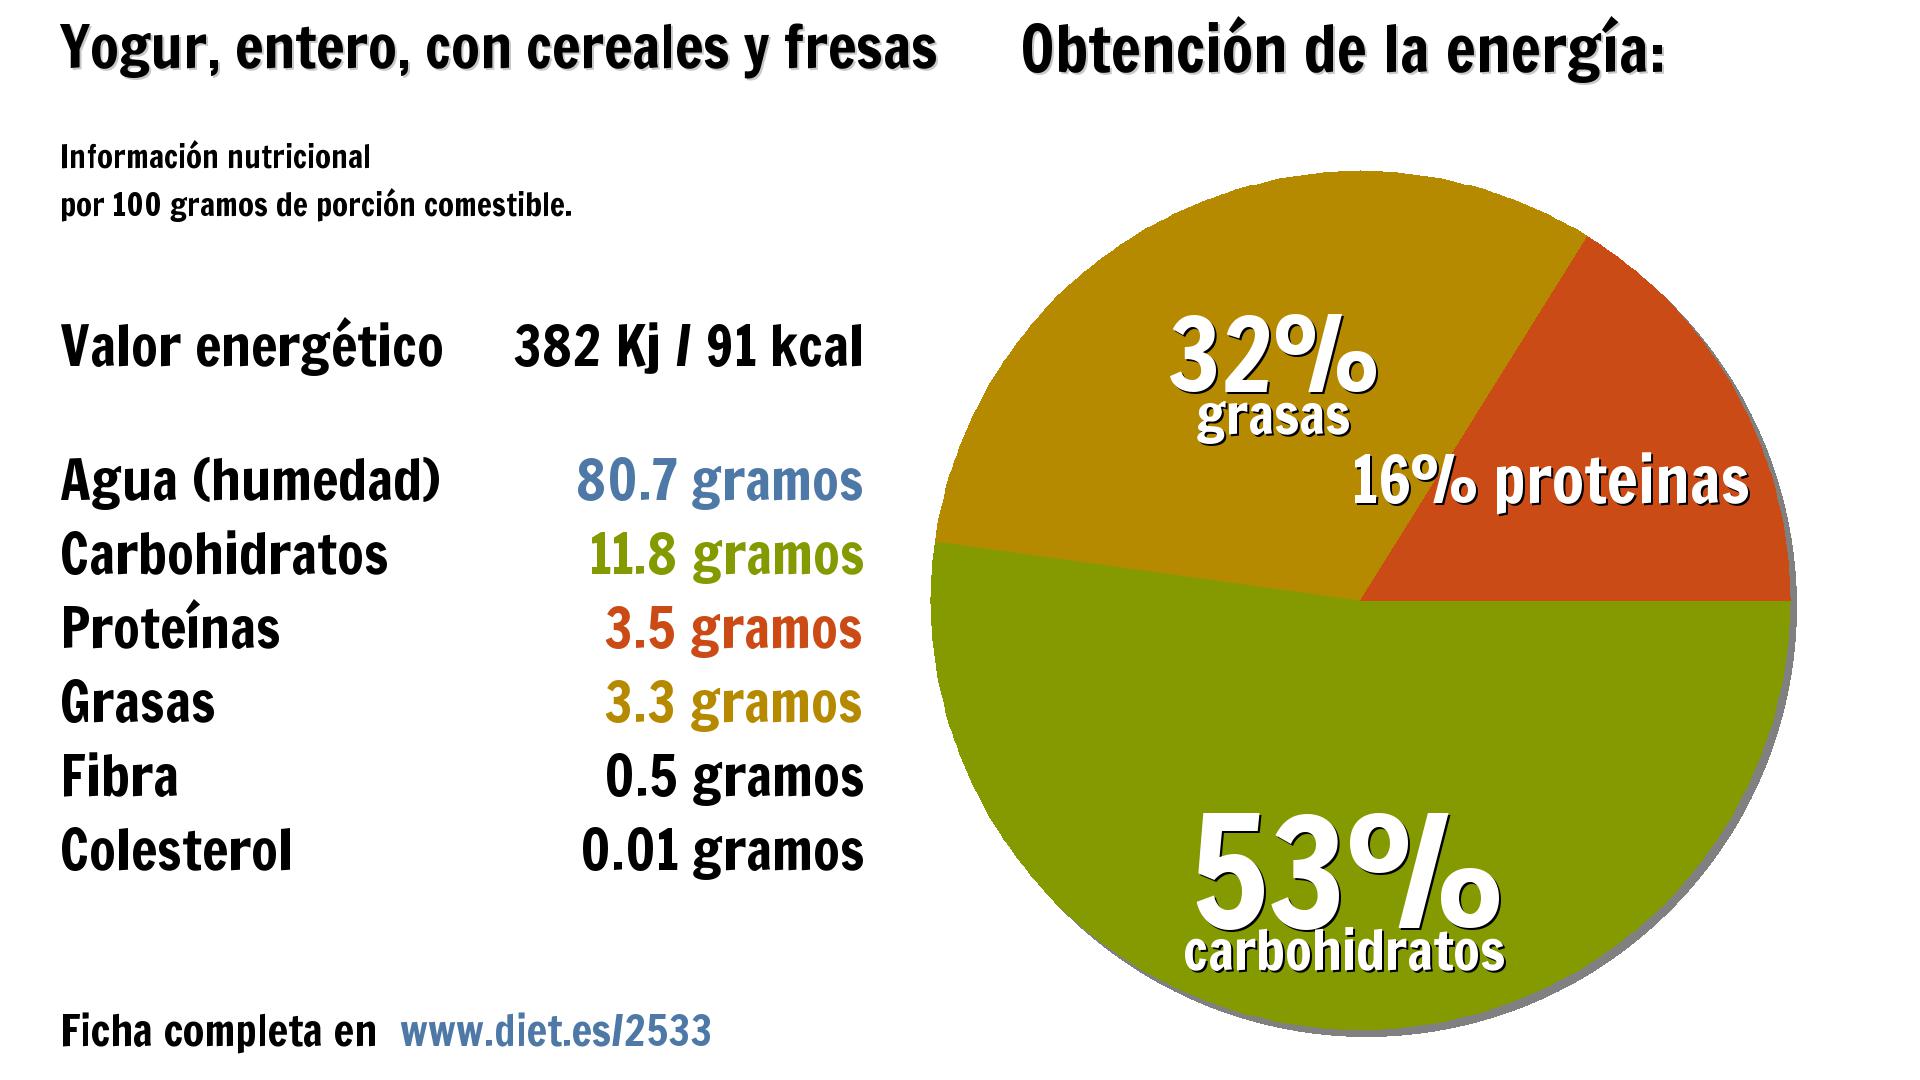 Yogur, entero, con cereales y fresas: energía 382 Kj, agua 81 g., carbohidratos 12 g., proteínas 4 g., grasas 3 g. y fibra 1 g.